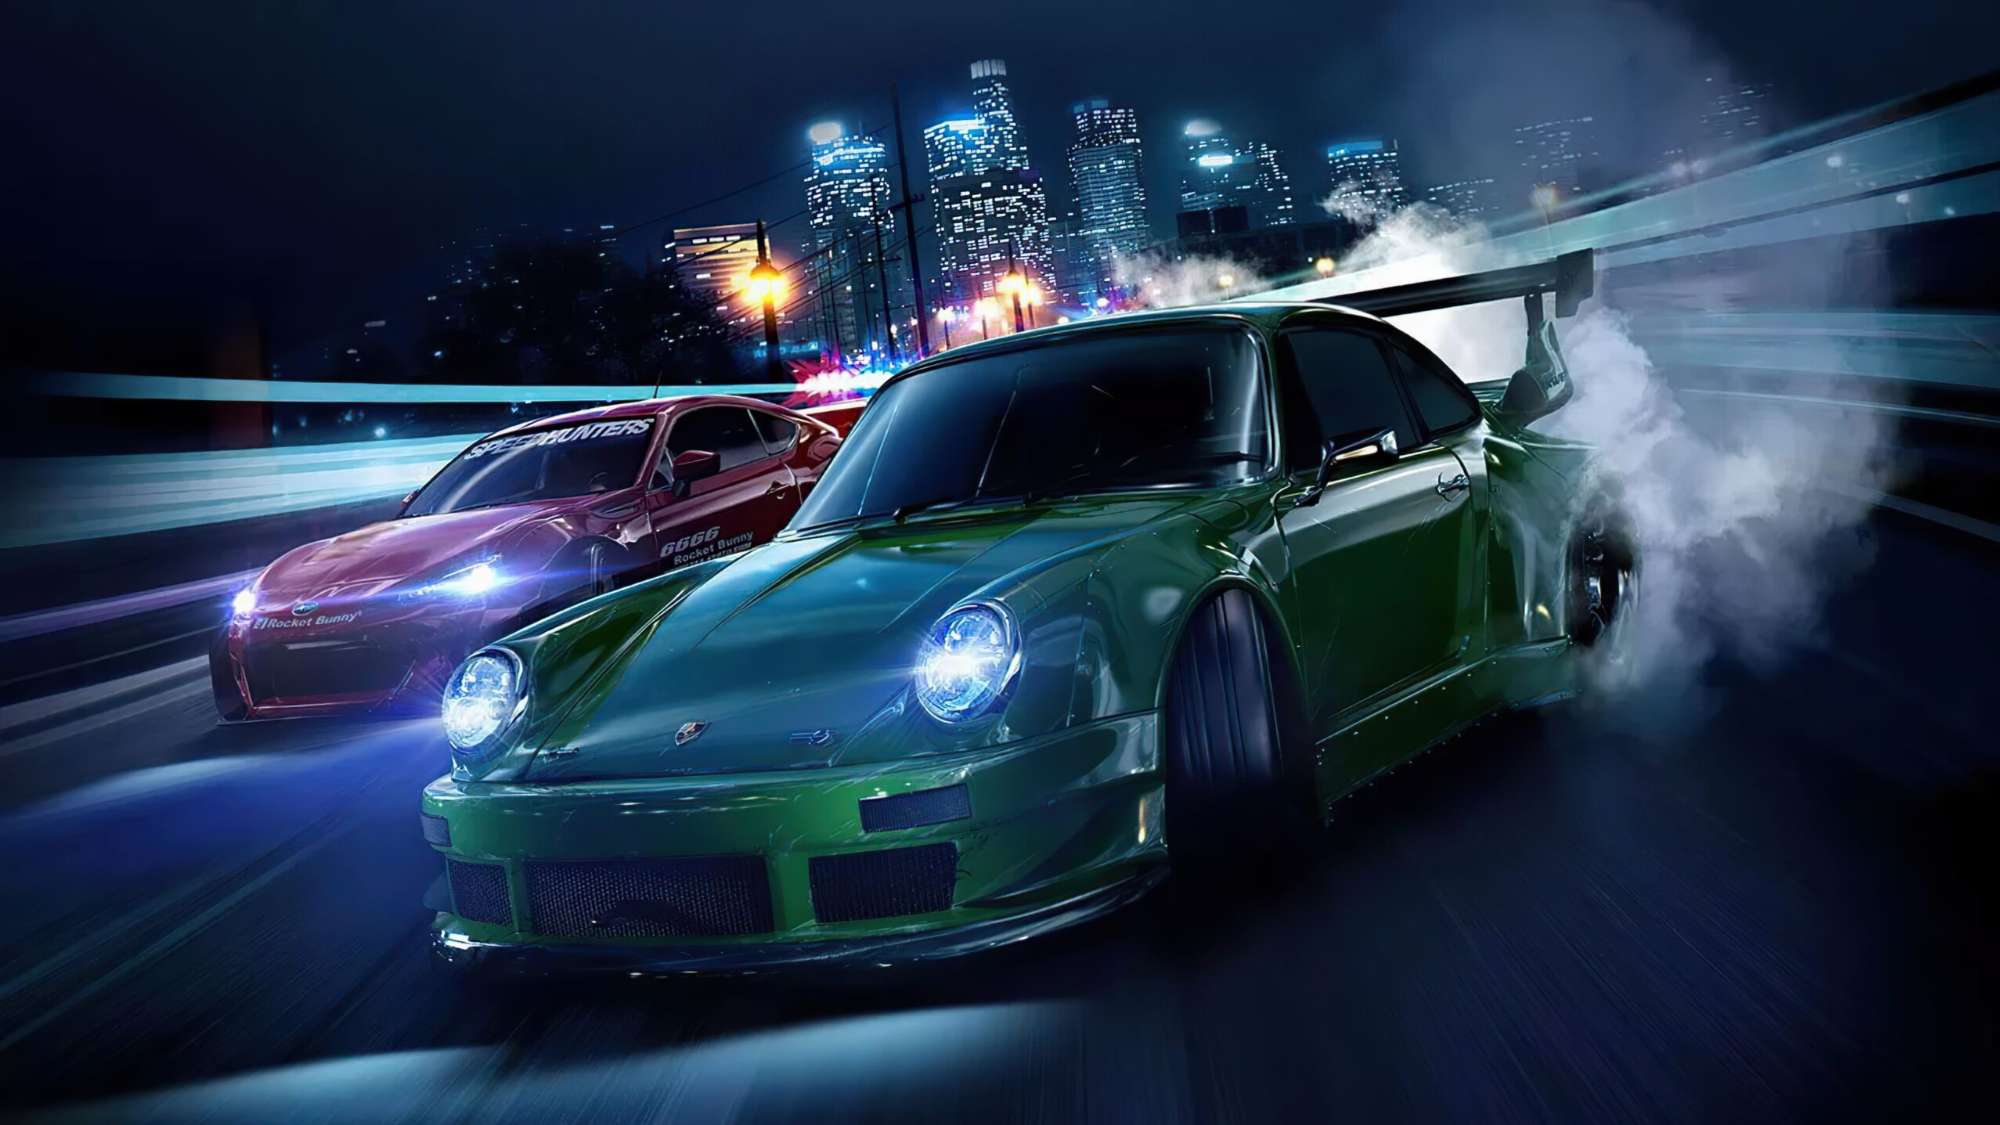 Need For Speed phần mới sẽ xuất hiện vào tháng 12?